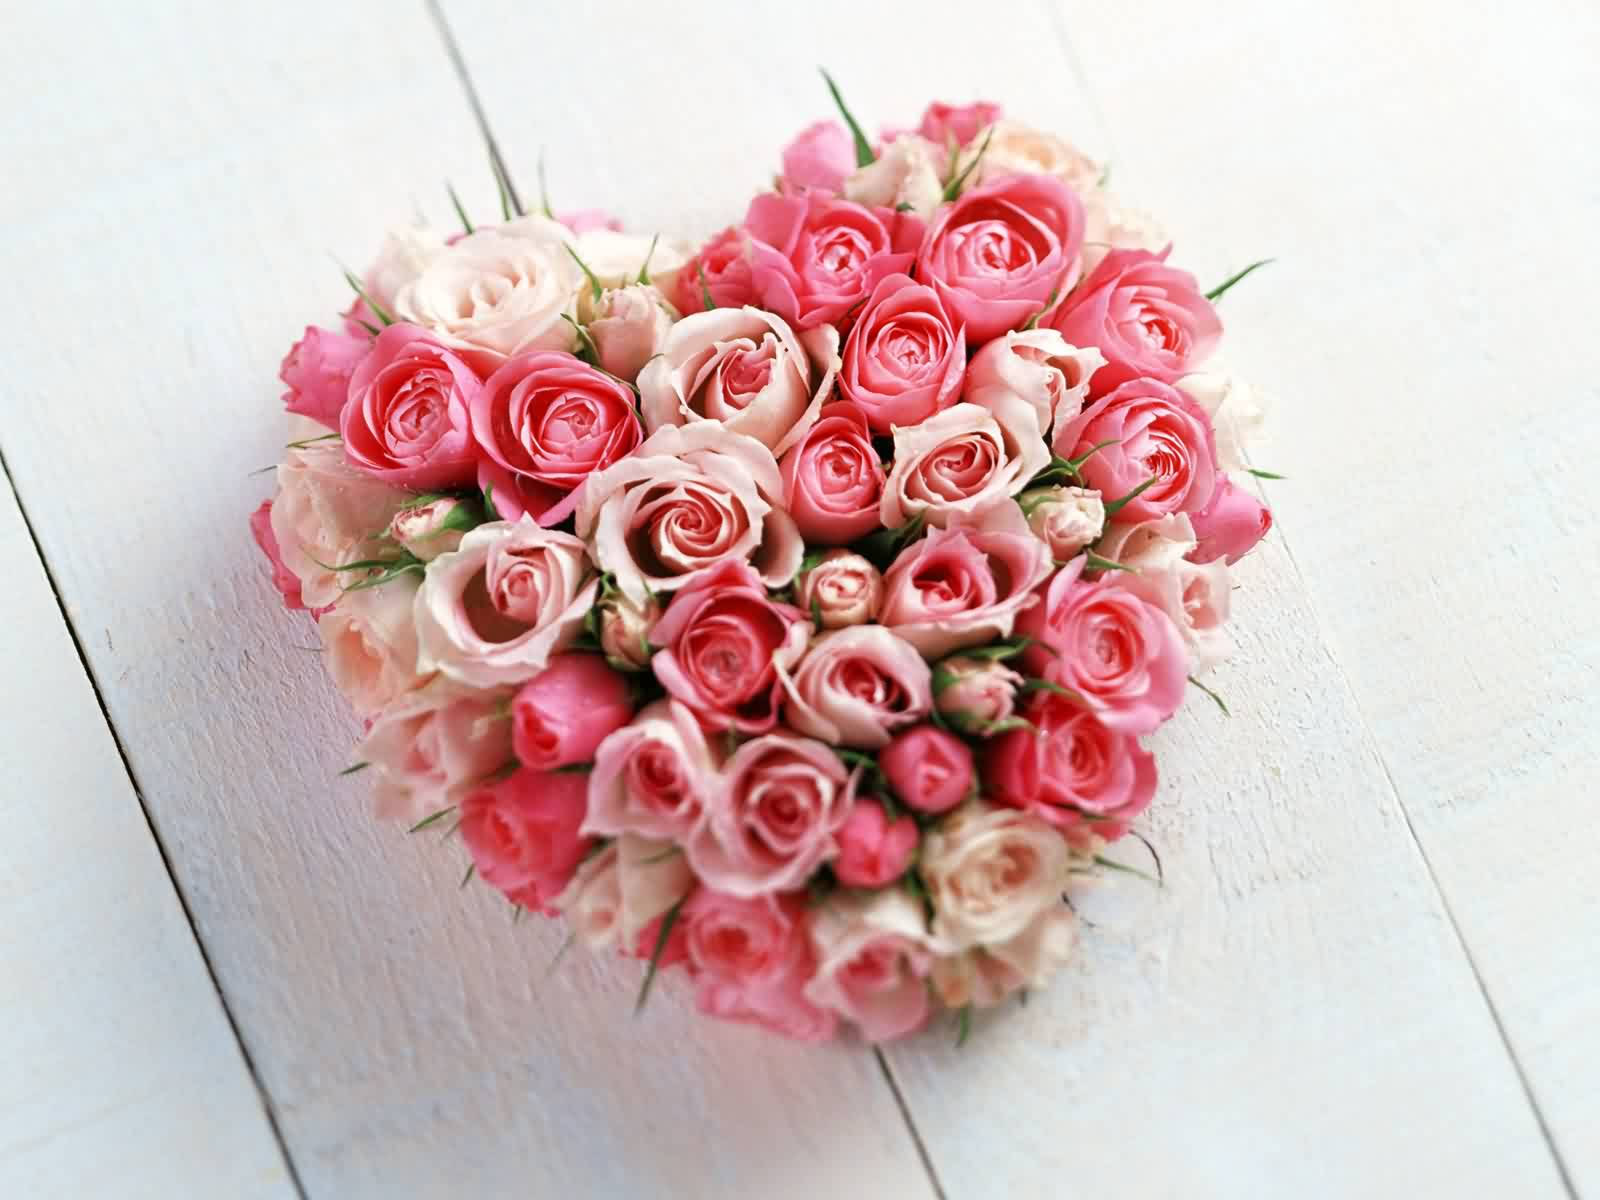 flores-de-san-valentin-6473742